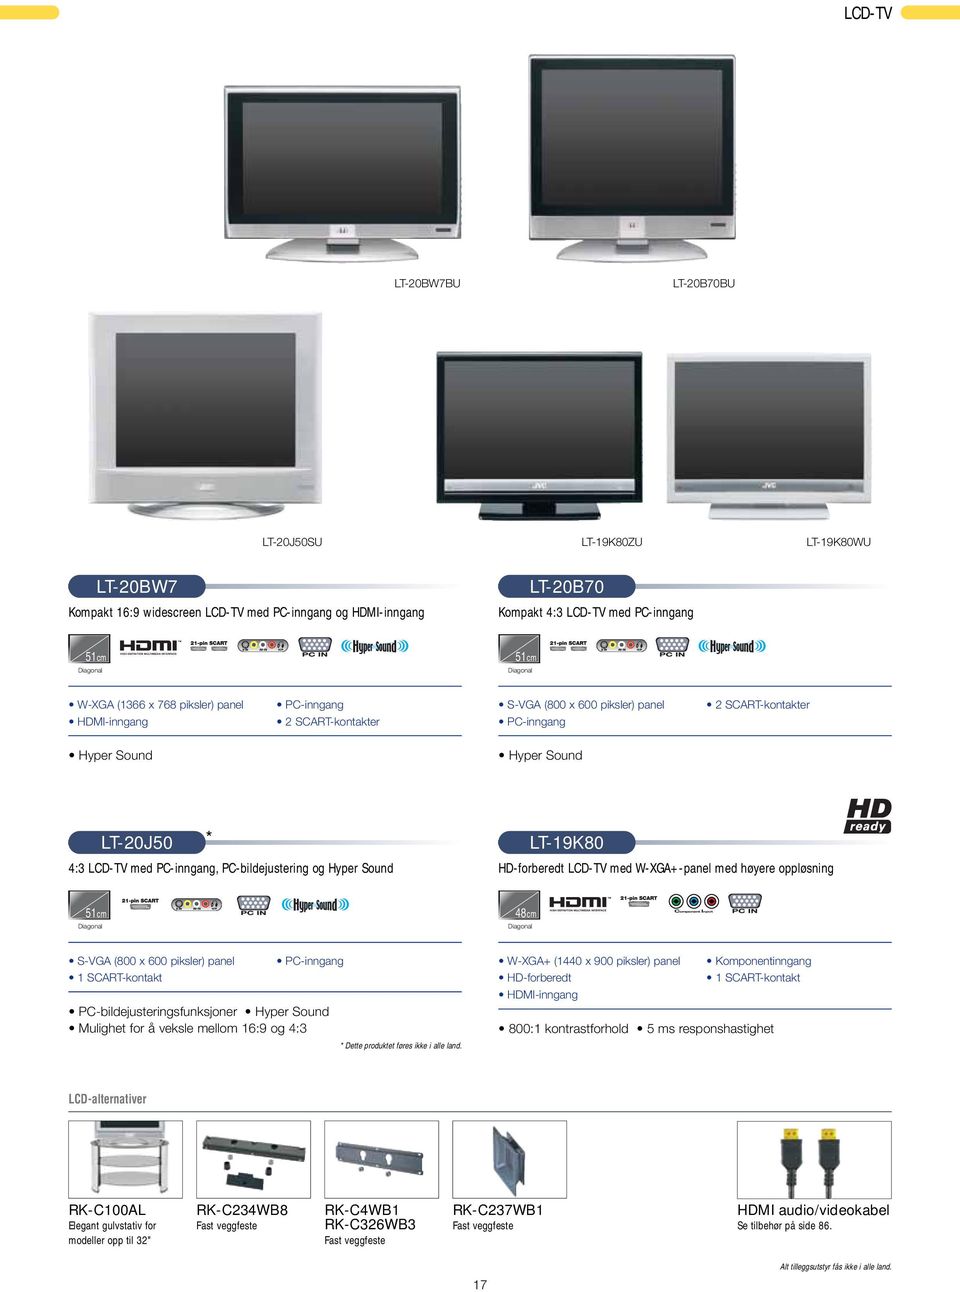 PC-inngang, PC-bildejustering og Hyper Sound LT-19K80 HD-forberedt LCD-TV med W-XGA+-panel med høyere oppløsning 51cm Diagonal 48cm Diagonal S-VGA (800 x 600 piksler) panel 1 SCART-kontakt PC-inngang